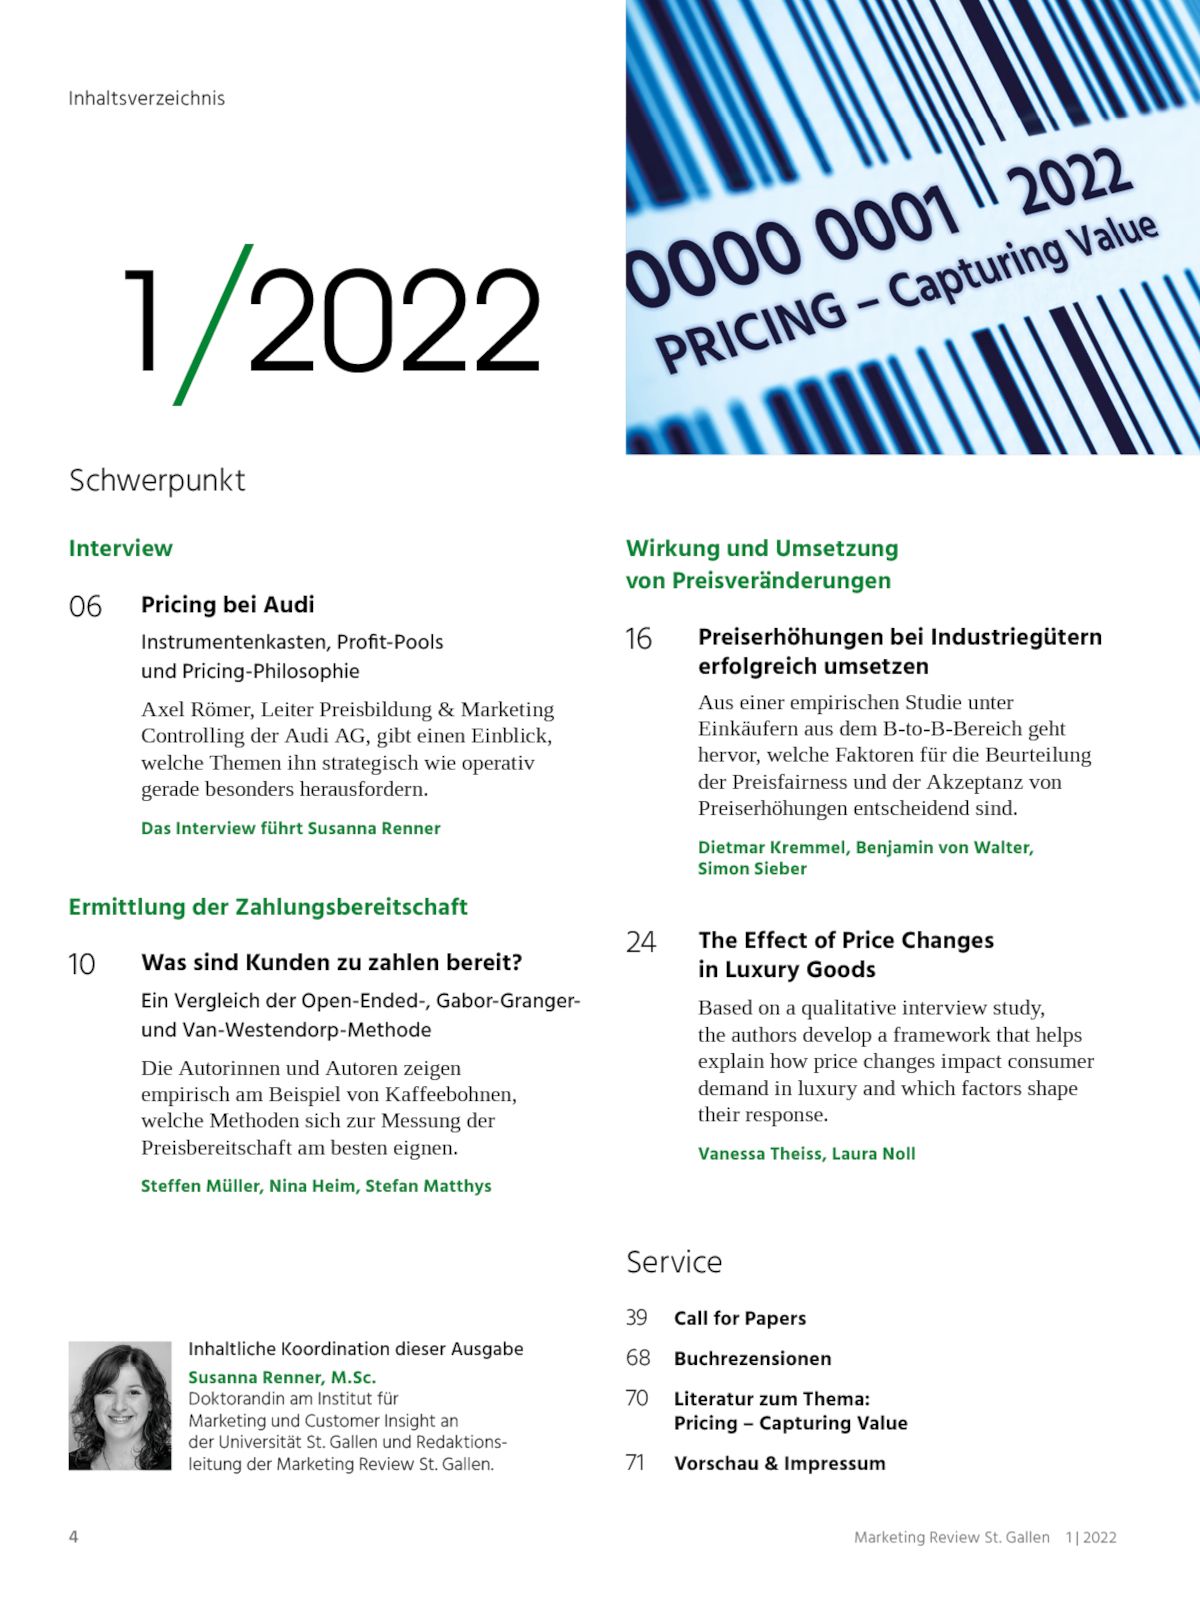 Marketing Review 1-2022 Inhaltsverzeichnis